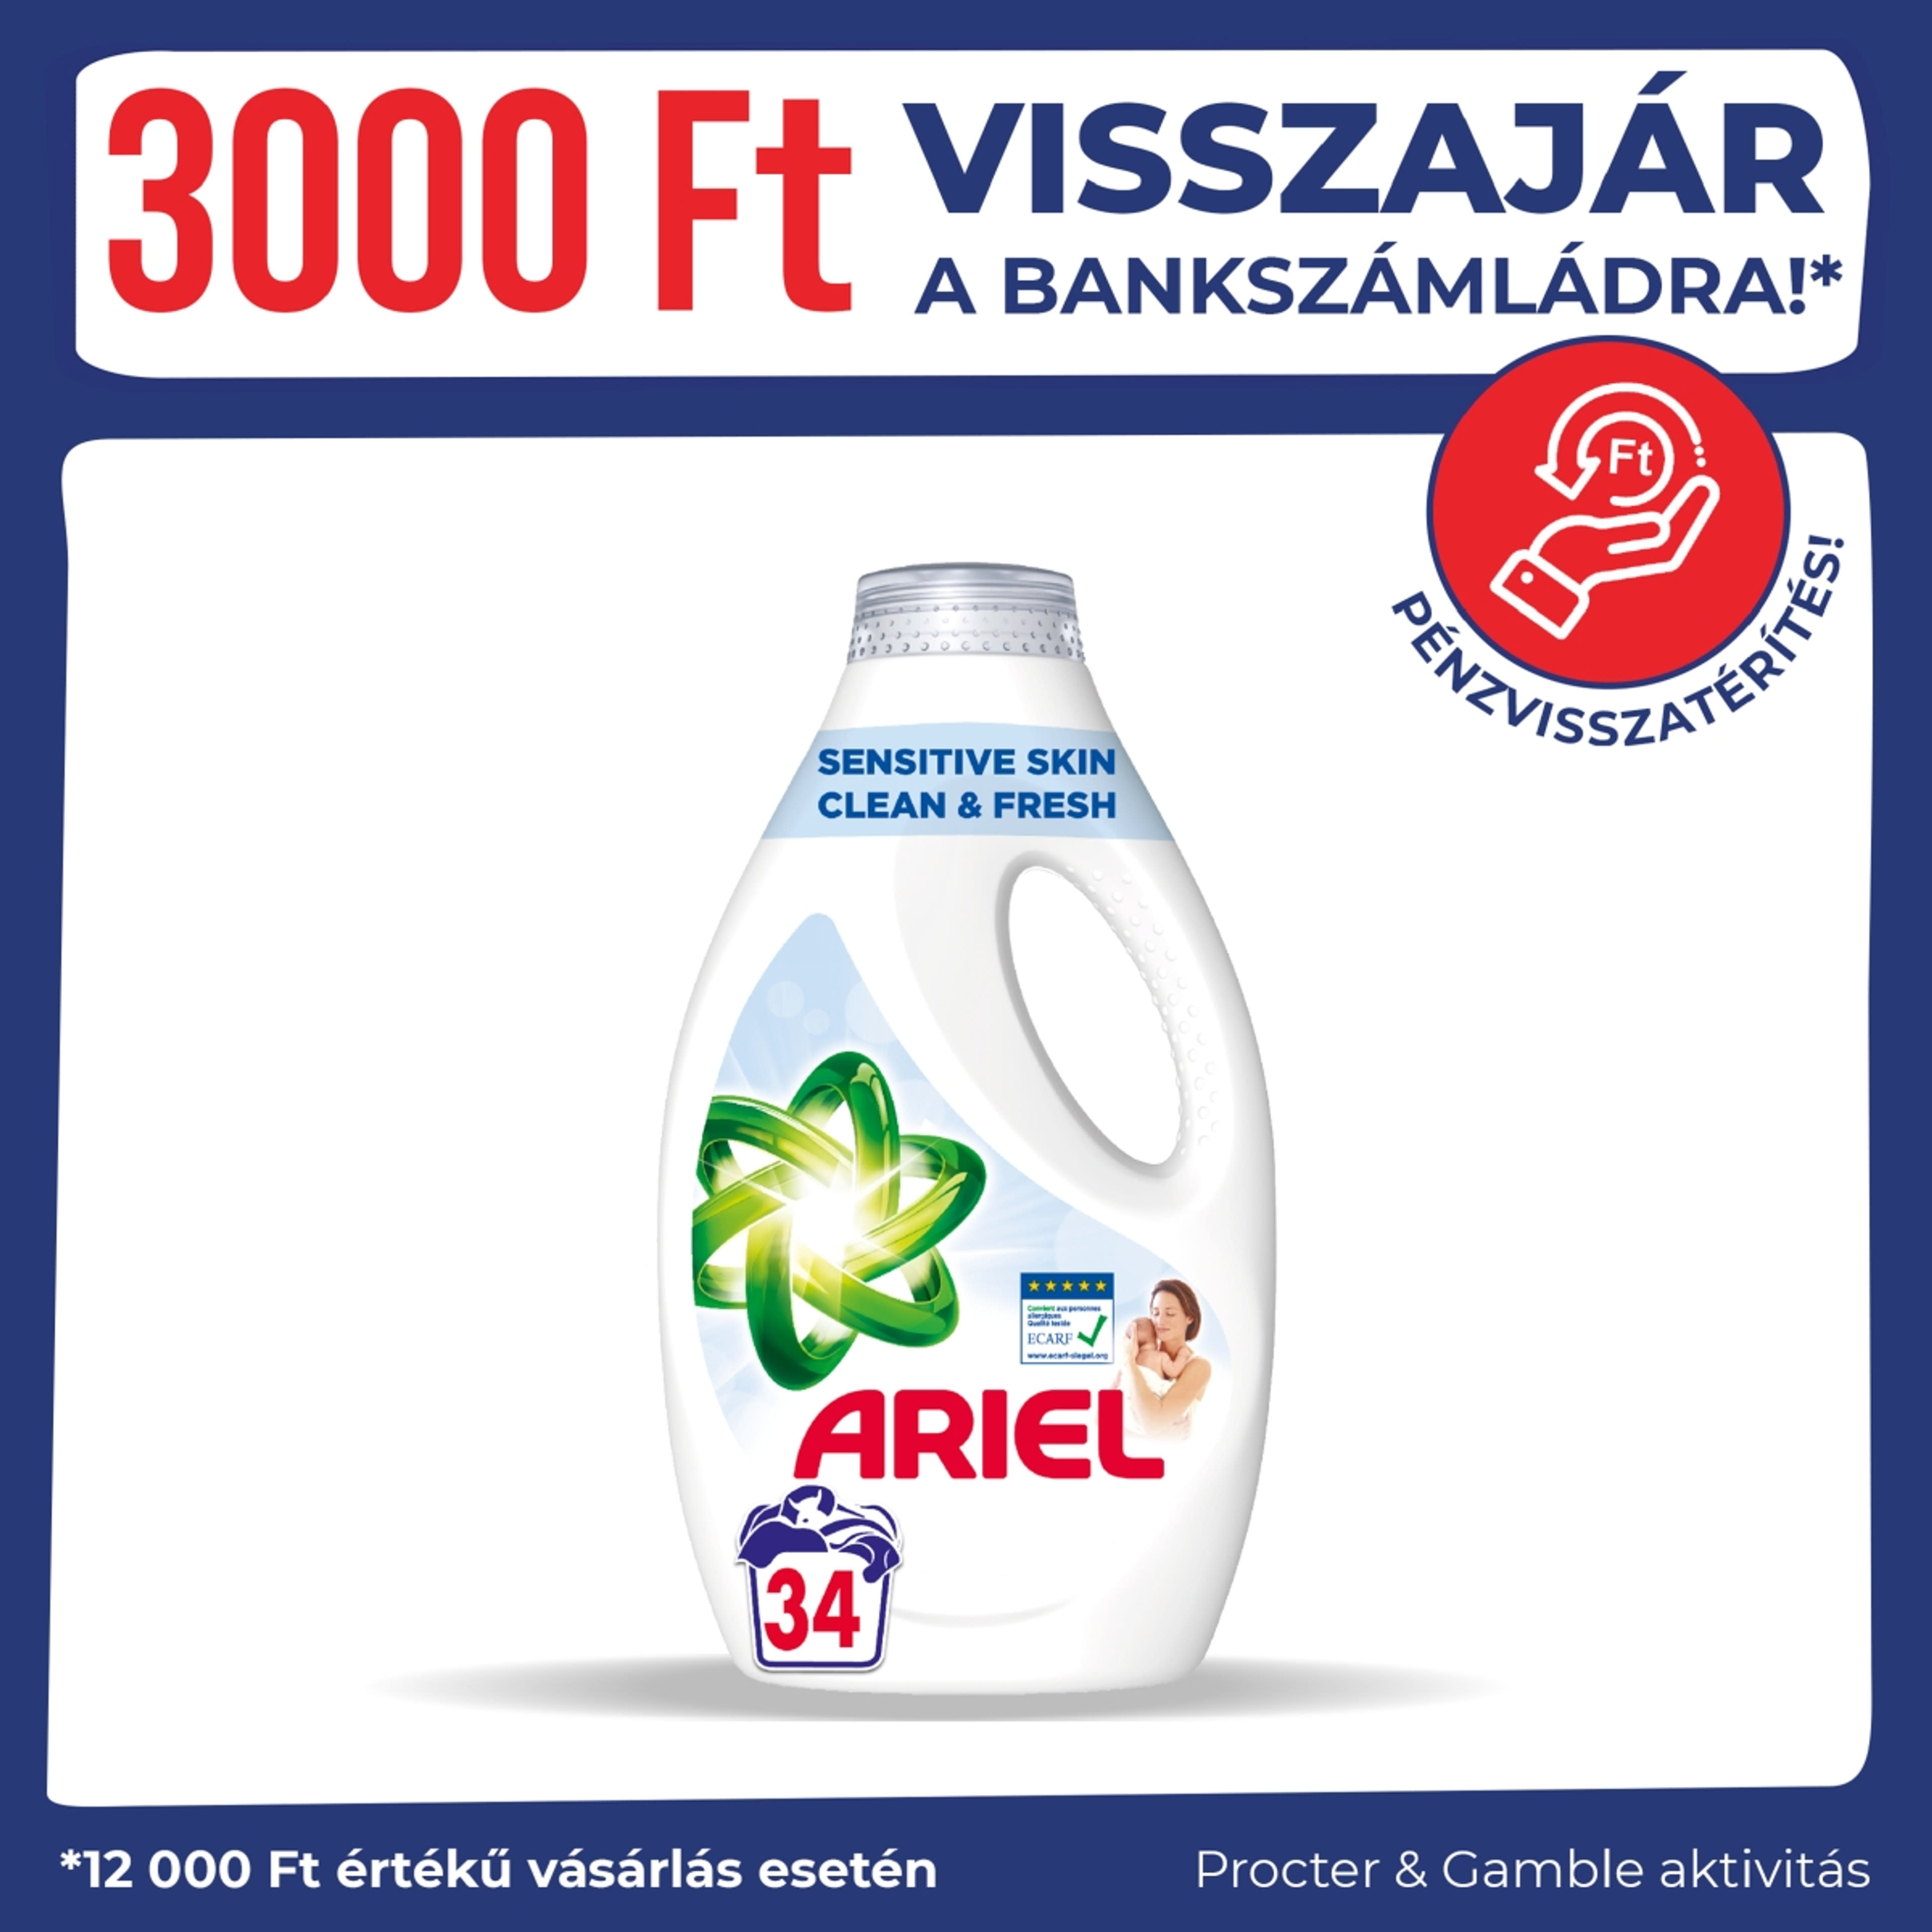 Ariel Sensitive Skin Clean & Fresh folyékony mosószer, 34 mosáshoz - 1700 ml-1